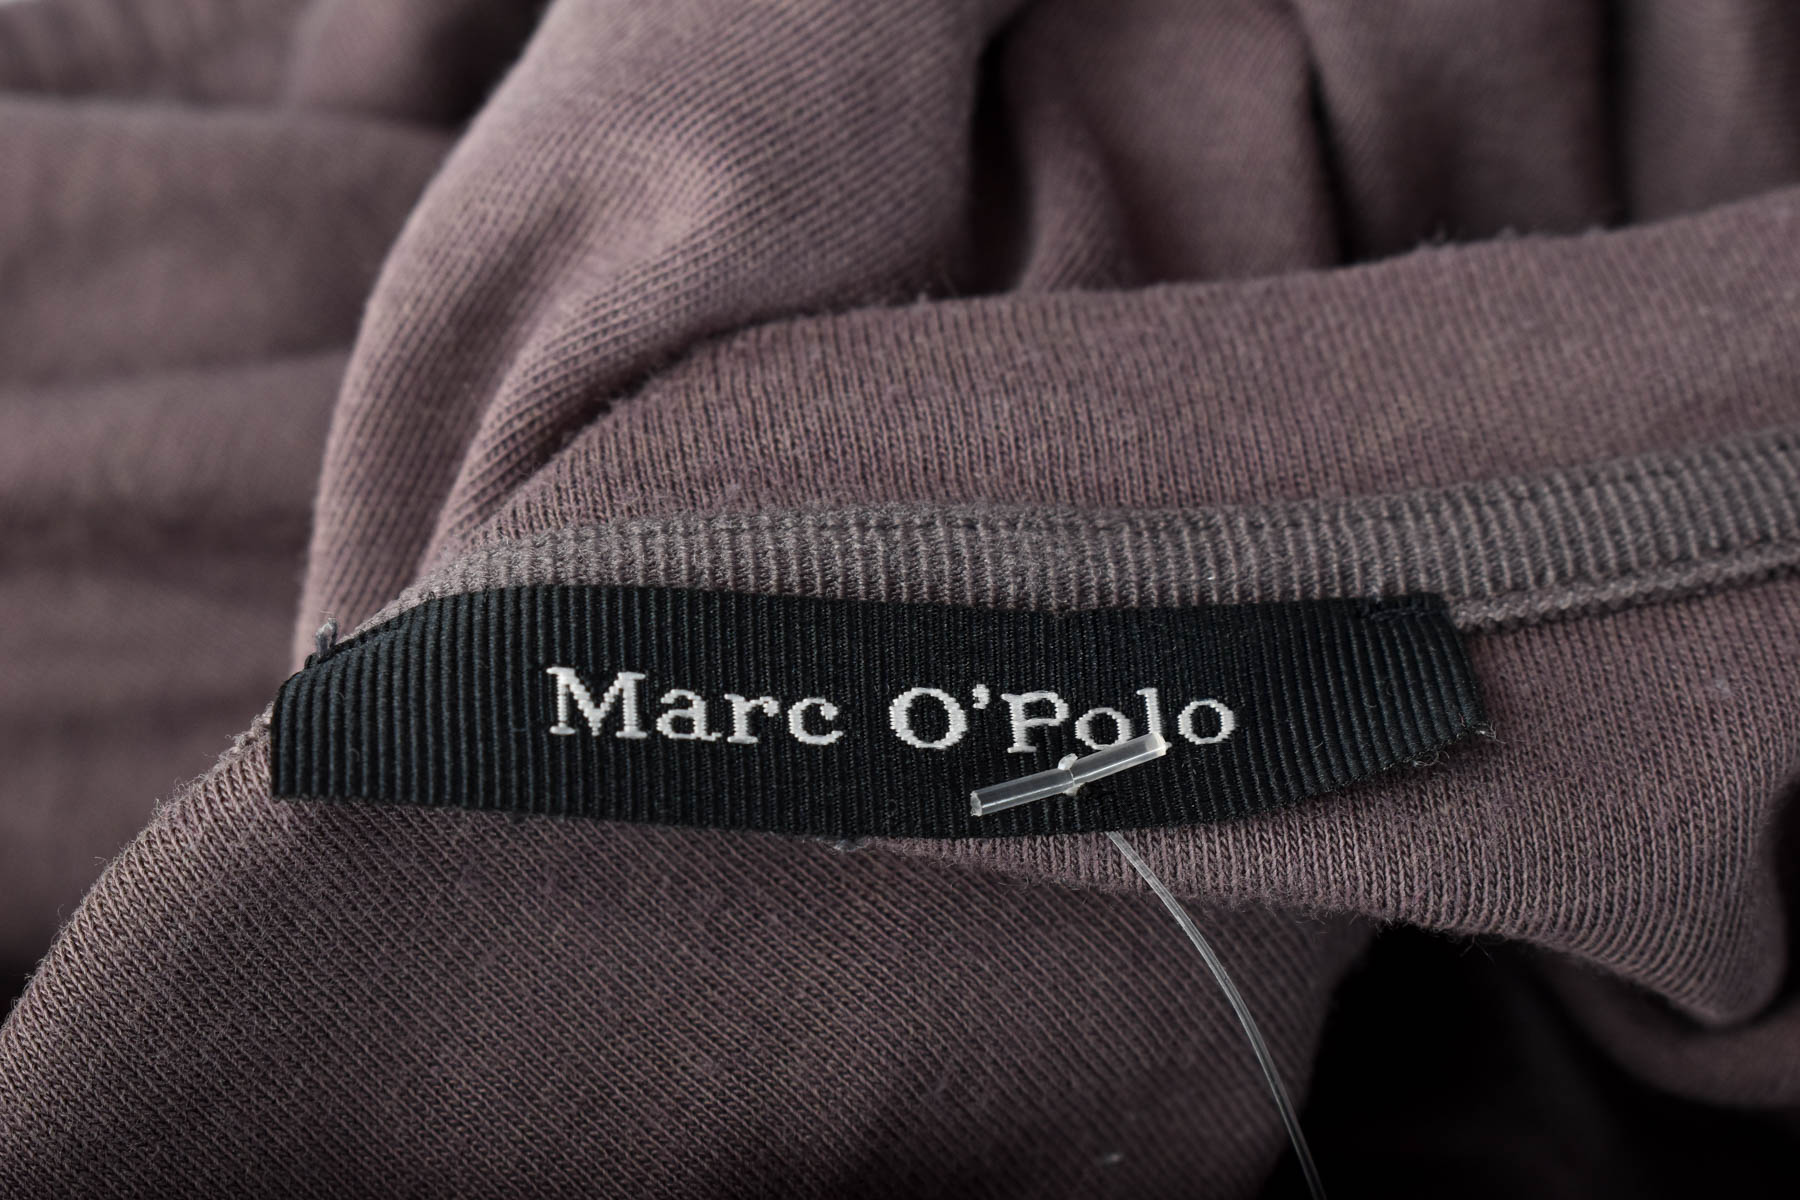 Women's blouse - Marc O' Polo - 2